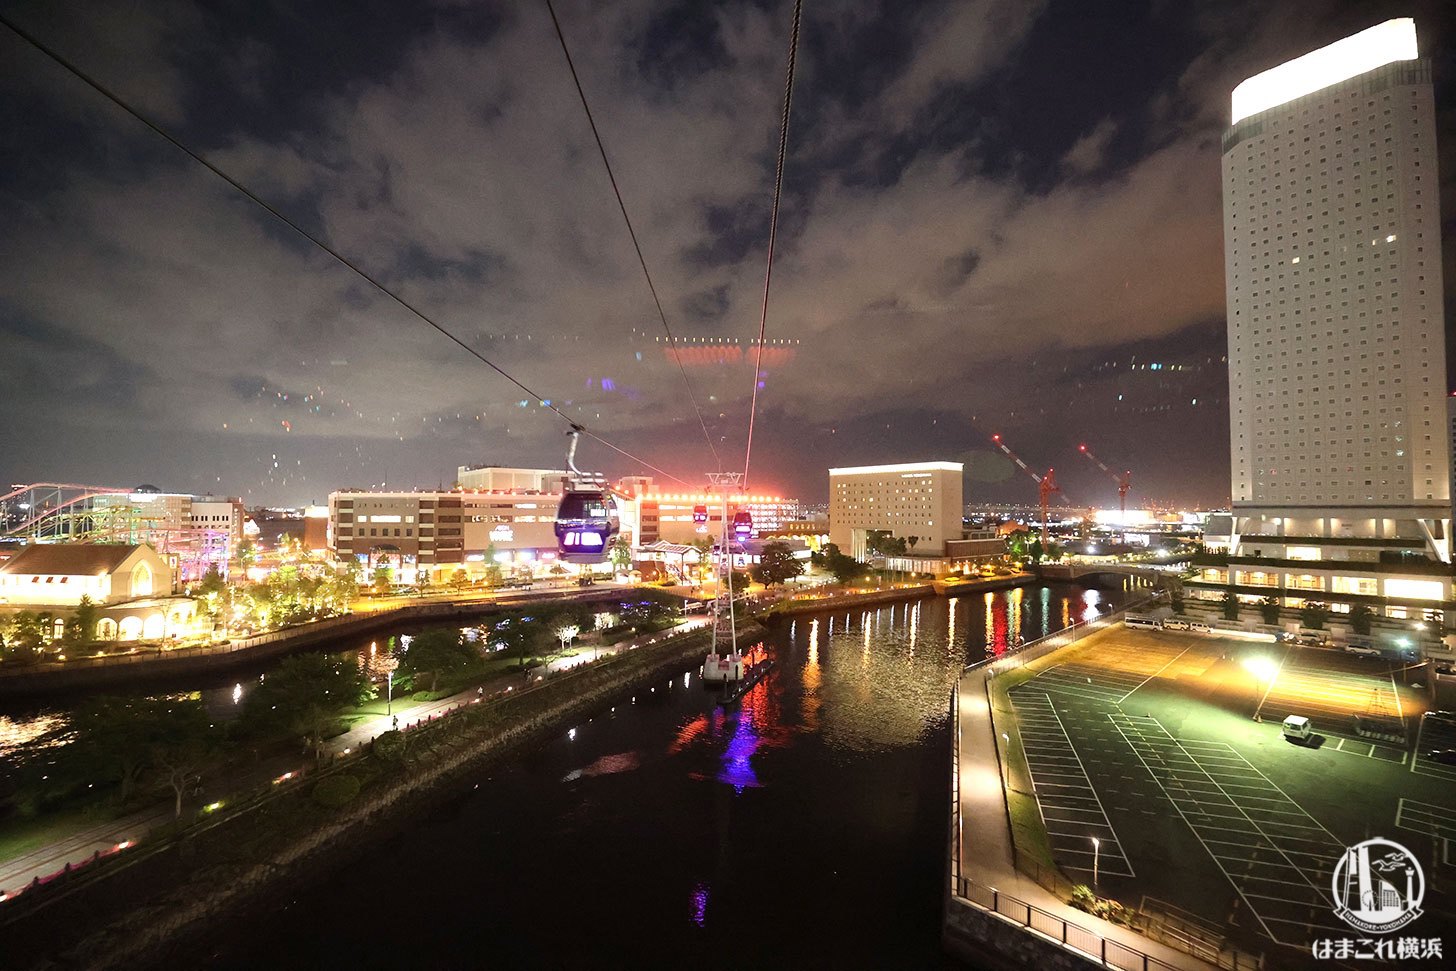 ゴンドラから見た夜景 横浜ワールドポーターズ・横浜赤レンガ倉庫